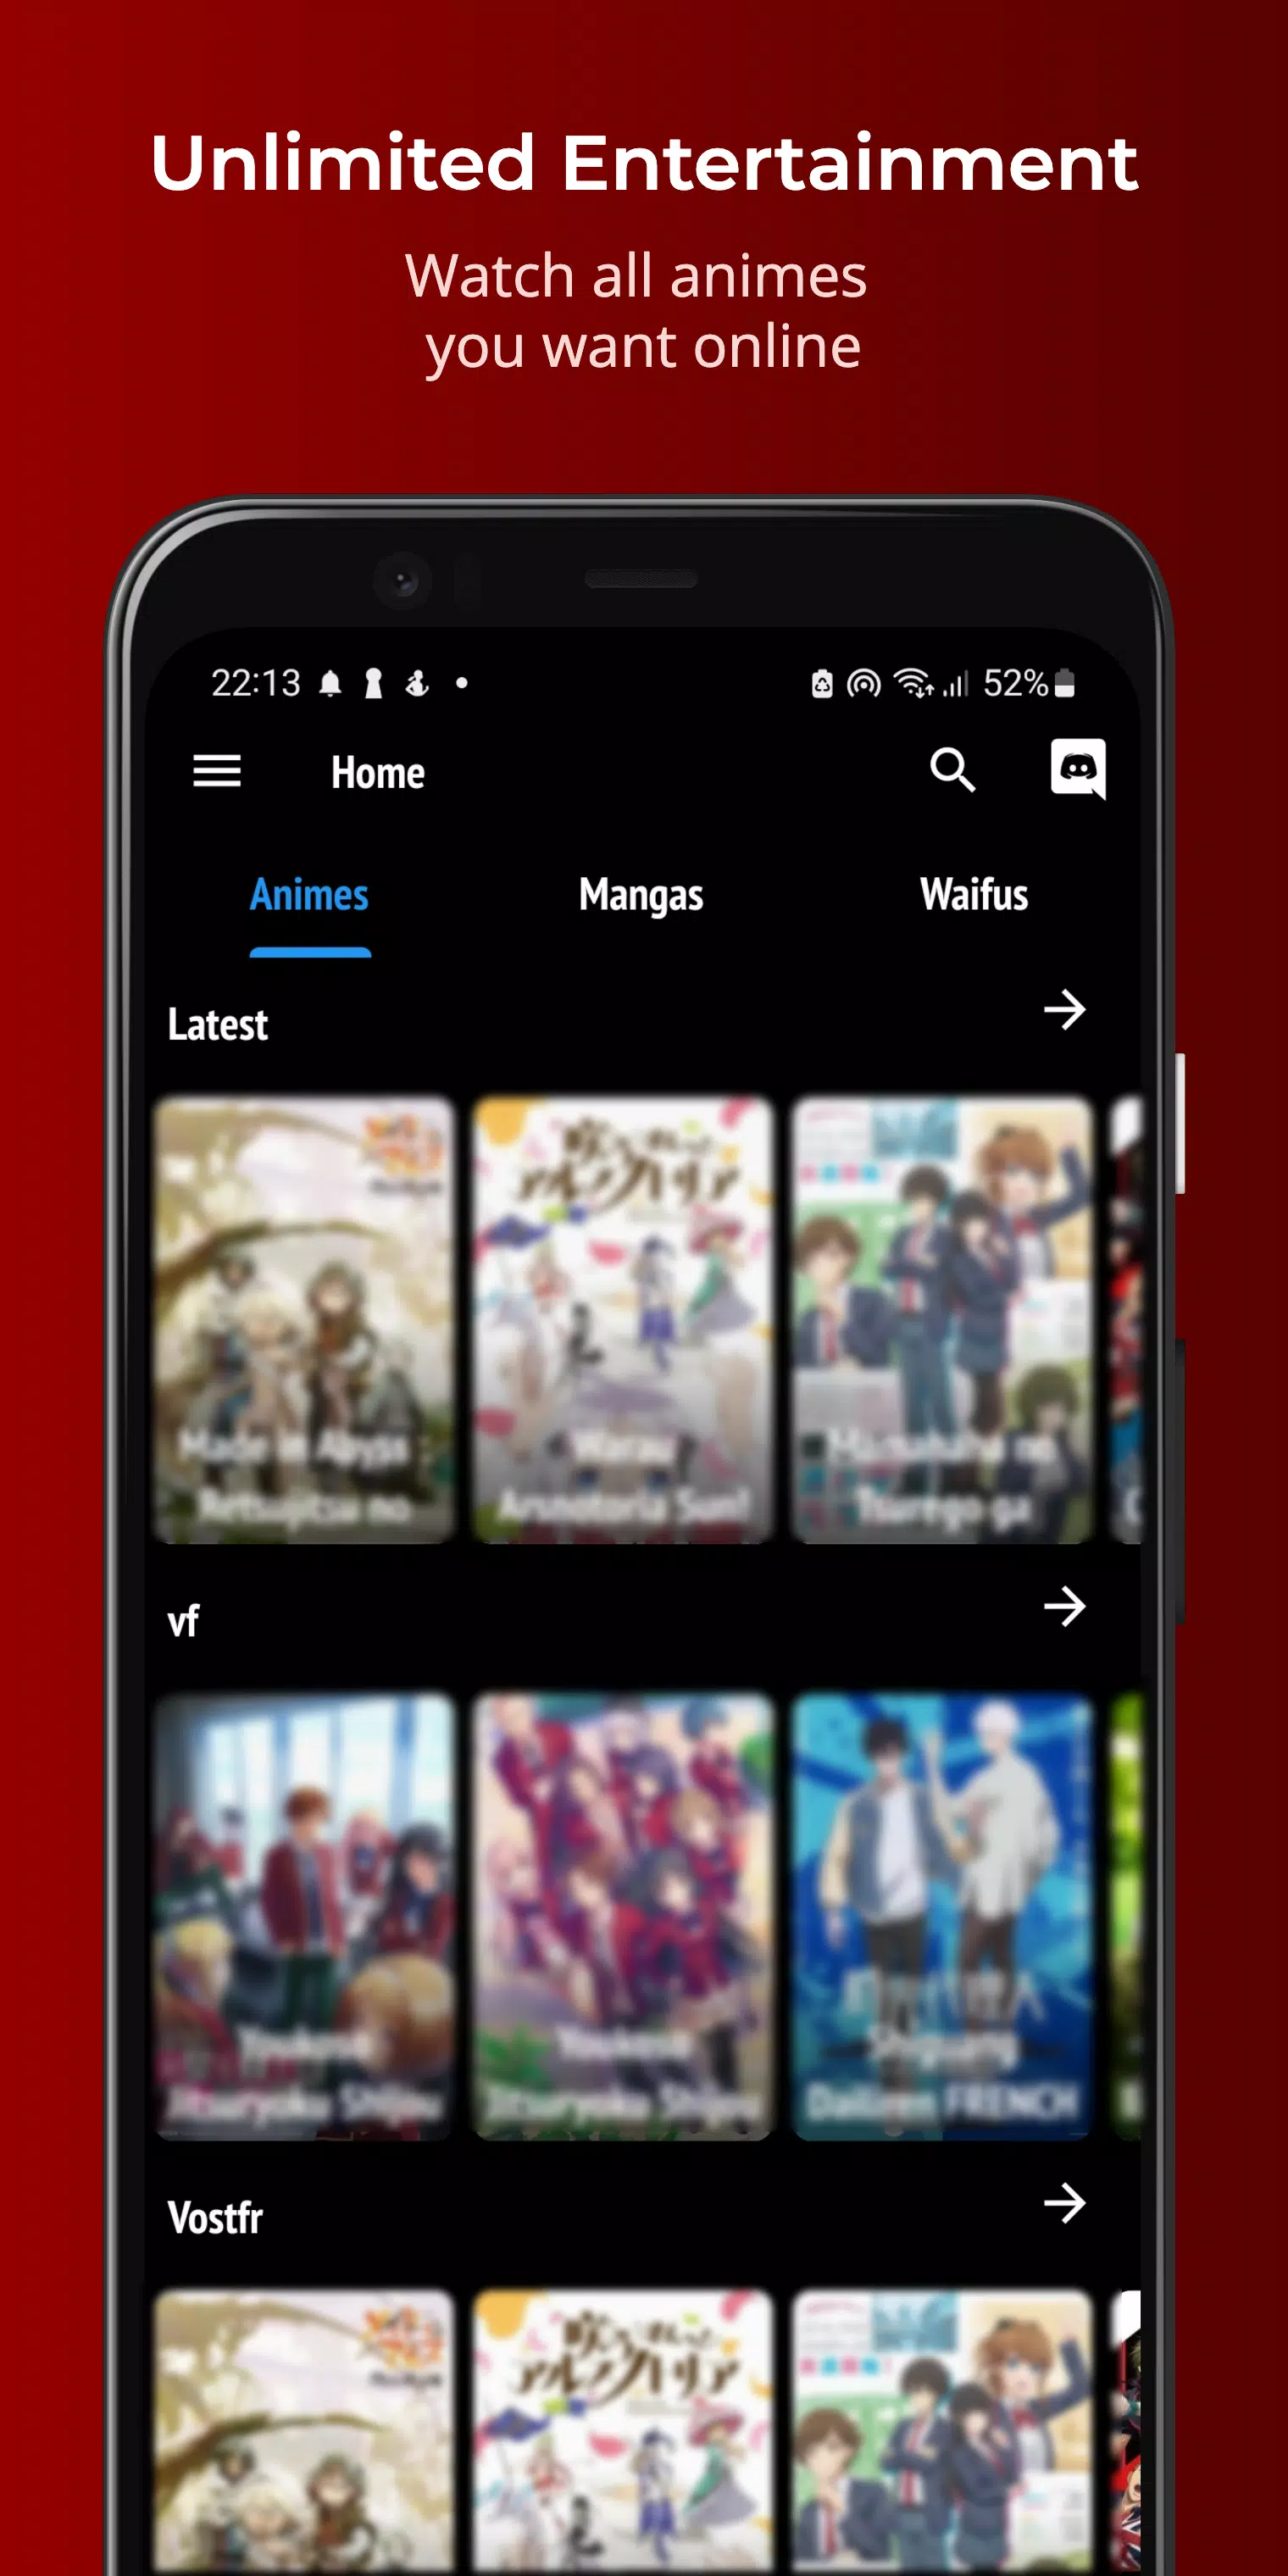 Vostfree - Animes VF et VOSTFR en Streaming et Téléchargement Gratuit